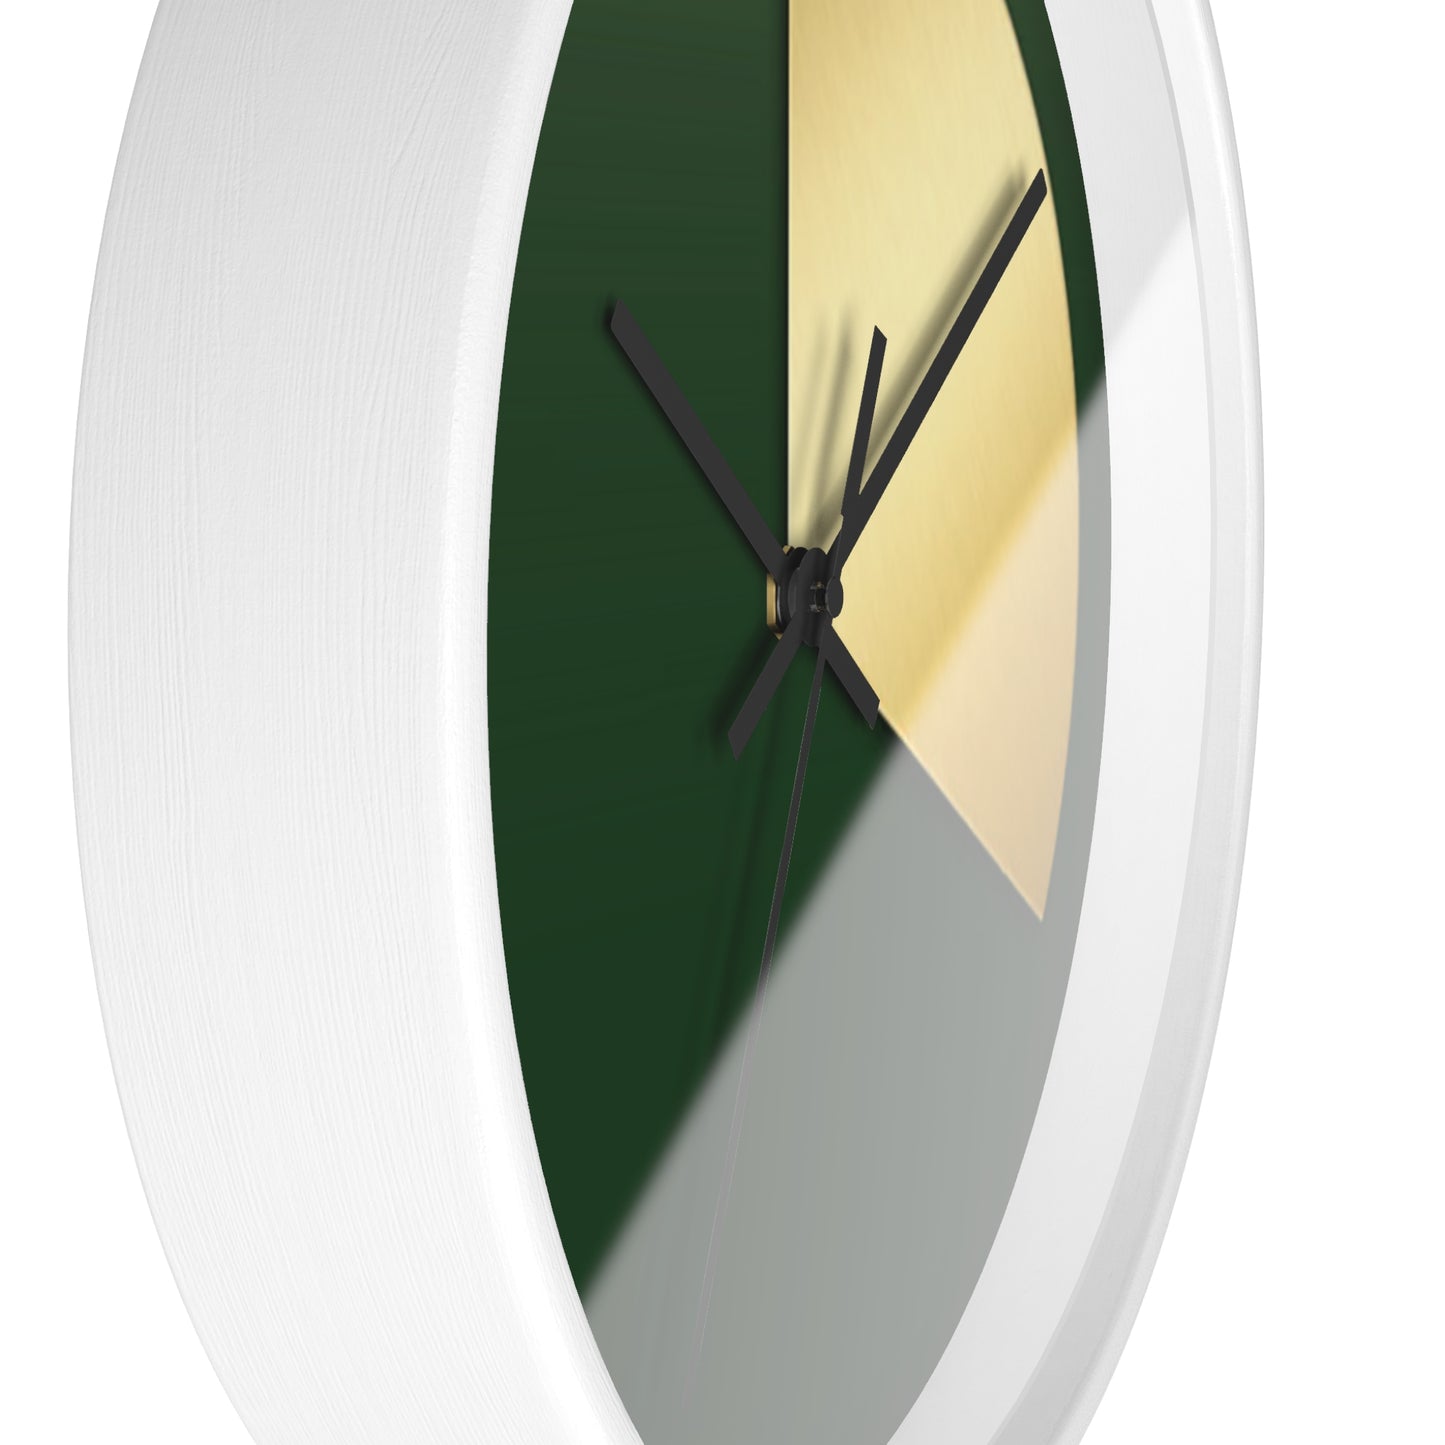 20-Minute Trader® Wall Clock